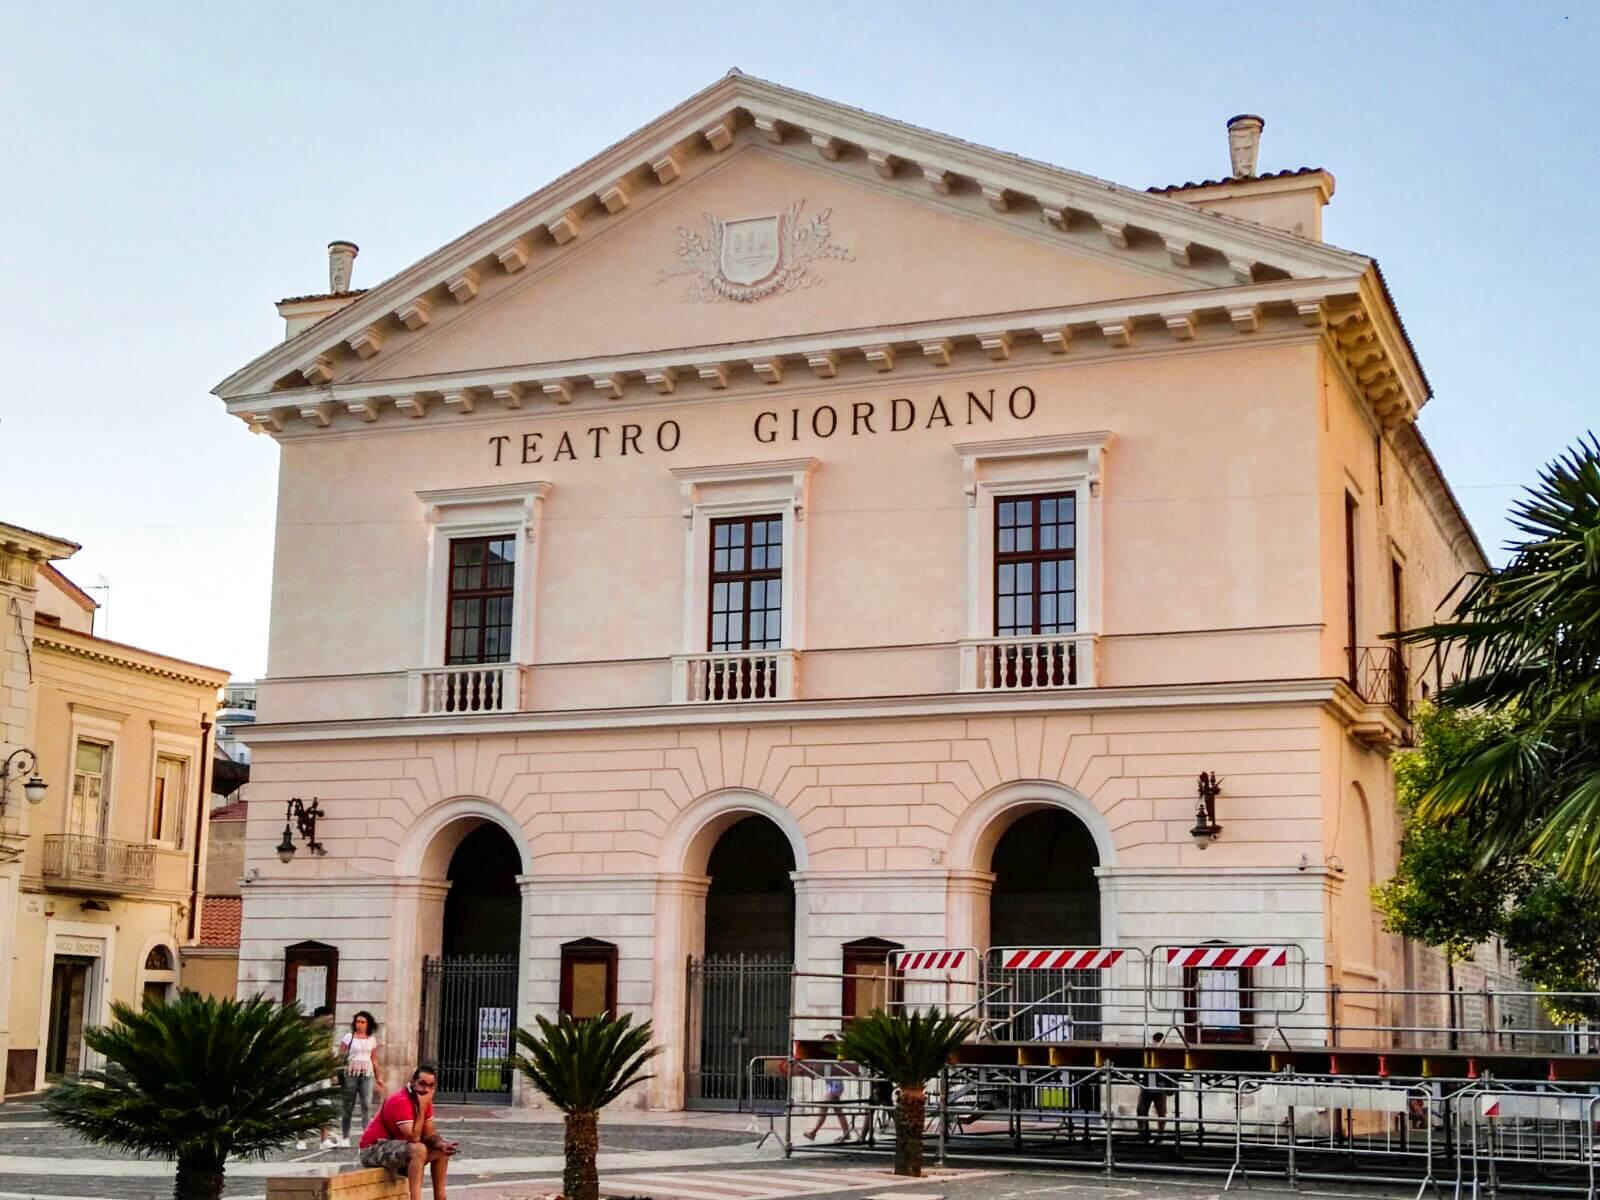 Foggia Teatro umberto giordano Travel Reisen Culture Tourism (2) (1)